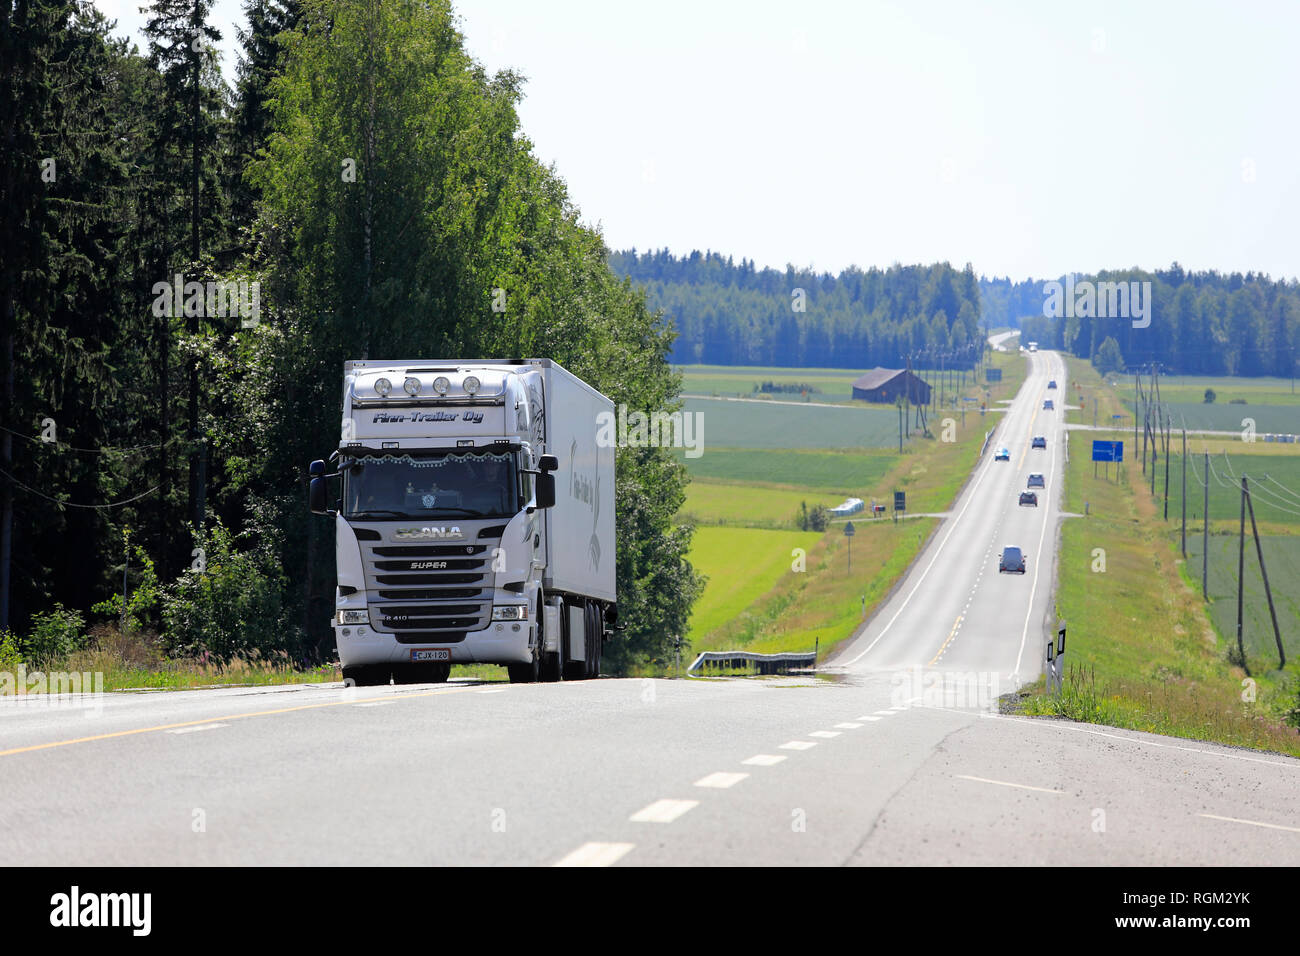 Jokioinen, Finnland - 14. Juli 2018: Weiße Fracht Stapler fährt bergauf in Highway Traffic durch ländliche Landschaft an einem sonnigen Tag der Sommer in Finnland. Stockfoto